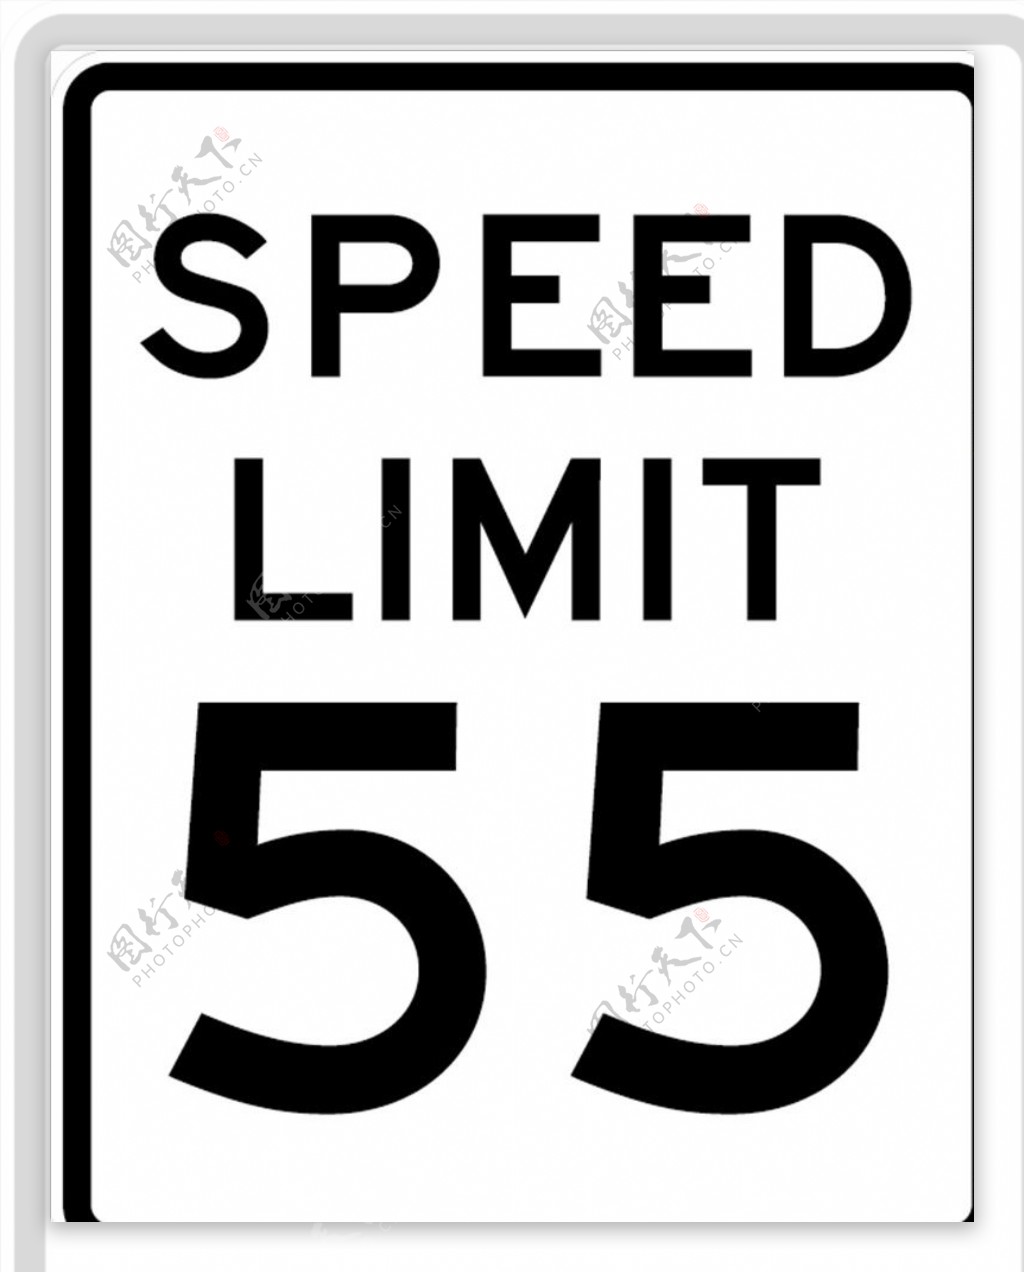 交通图标系列速度限制图标